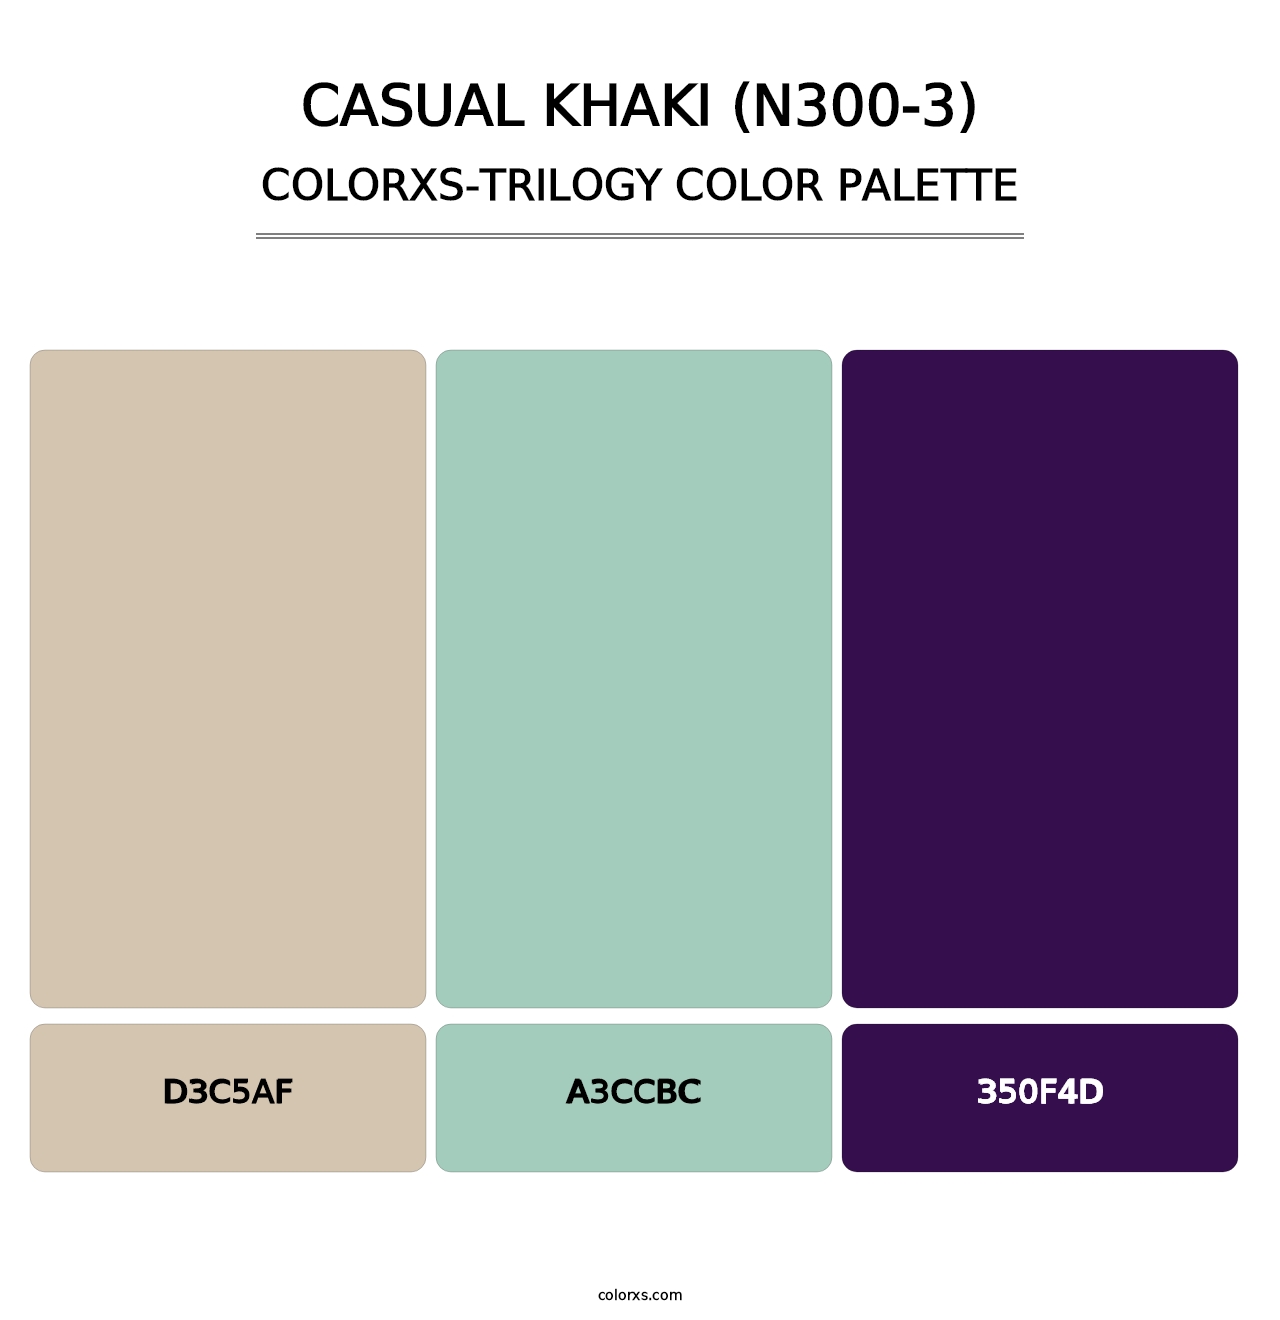 Casual Khaki (N300-3) - Colorxs Trilogy Palette